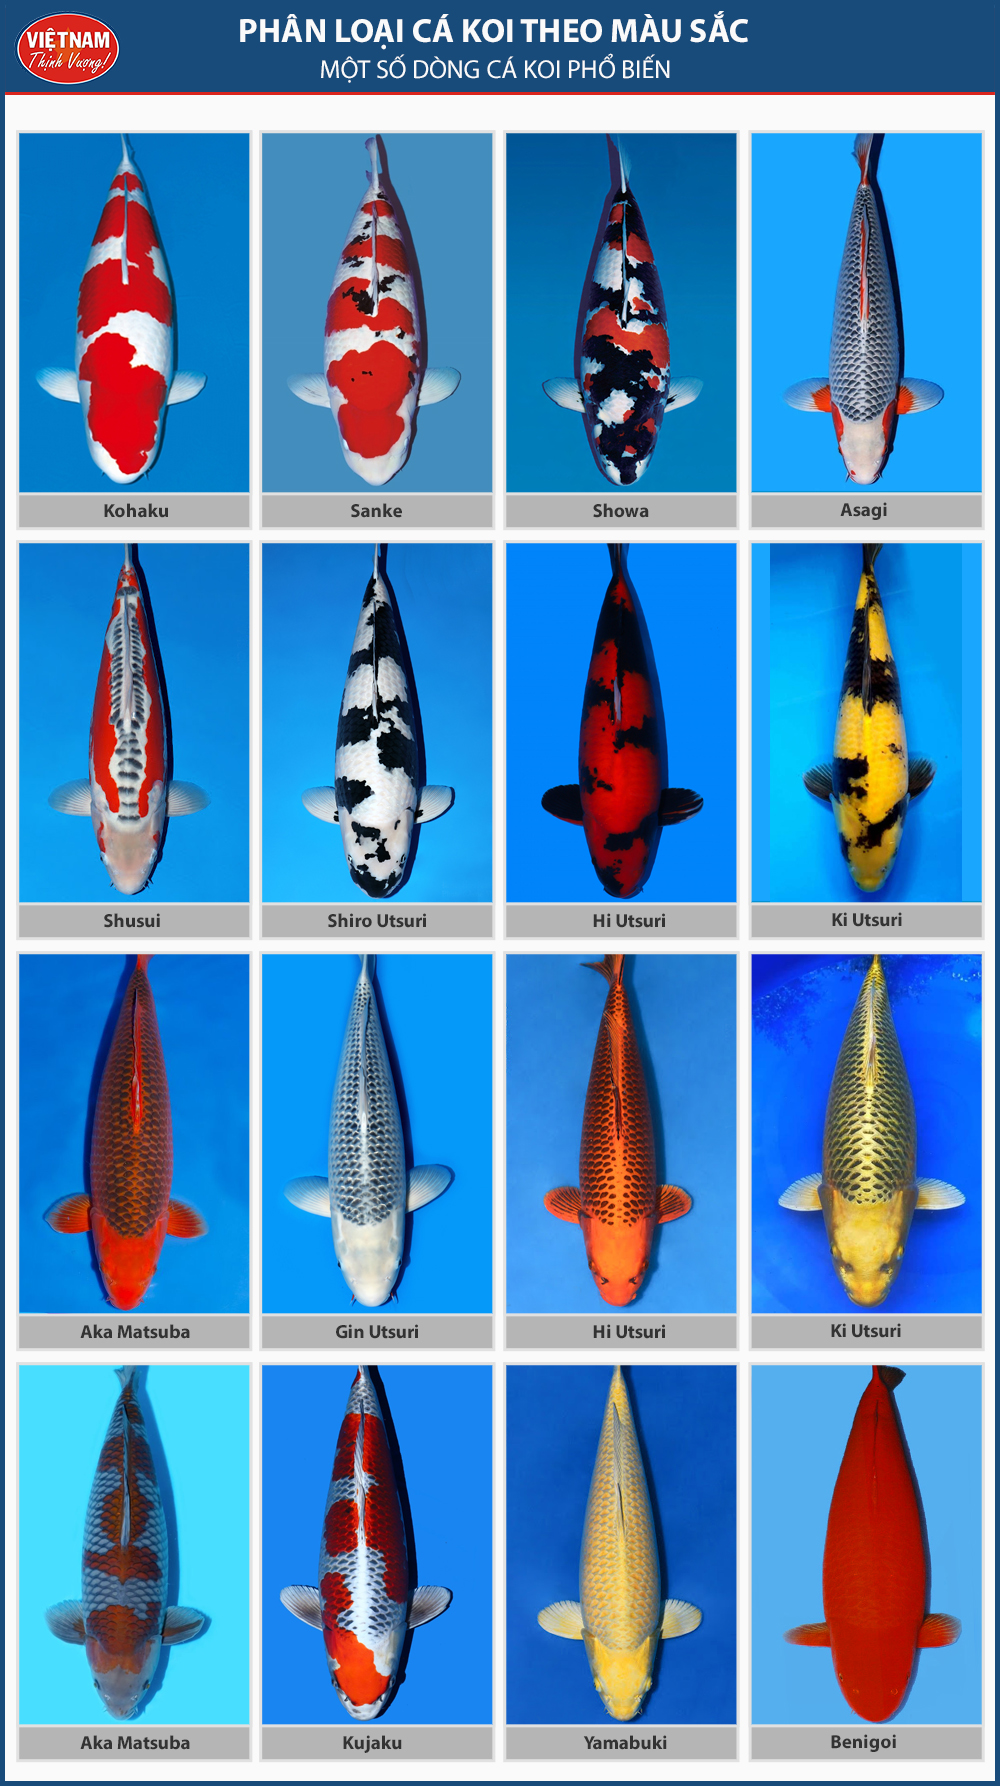 Một số dòng cá koi phổ biến, được nhiều người chơi lựa chọn.